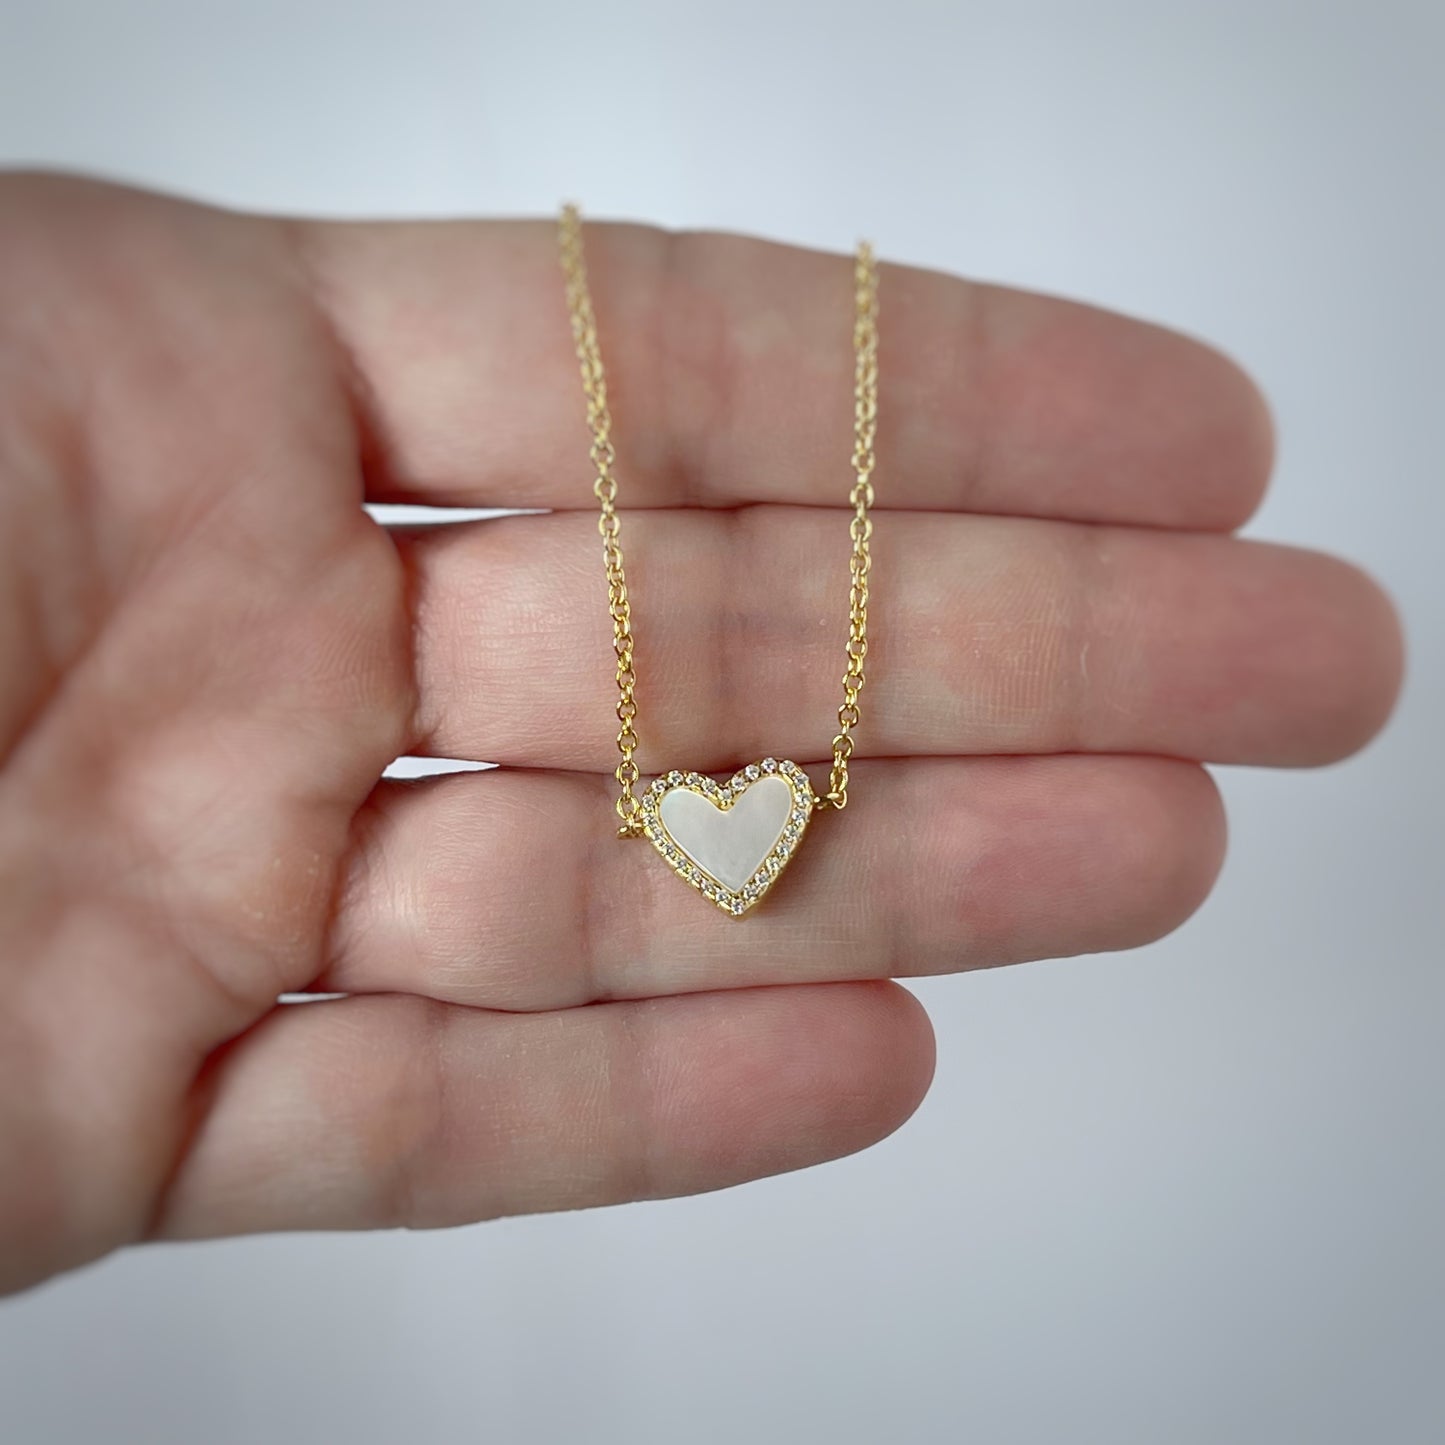 Collar de corazón de madre perla blanca con circonitas en plata con baño de oro